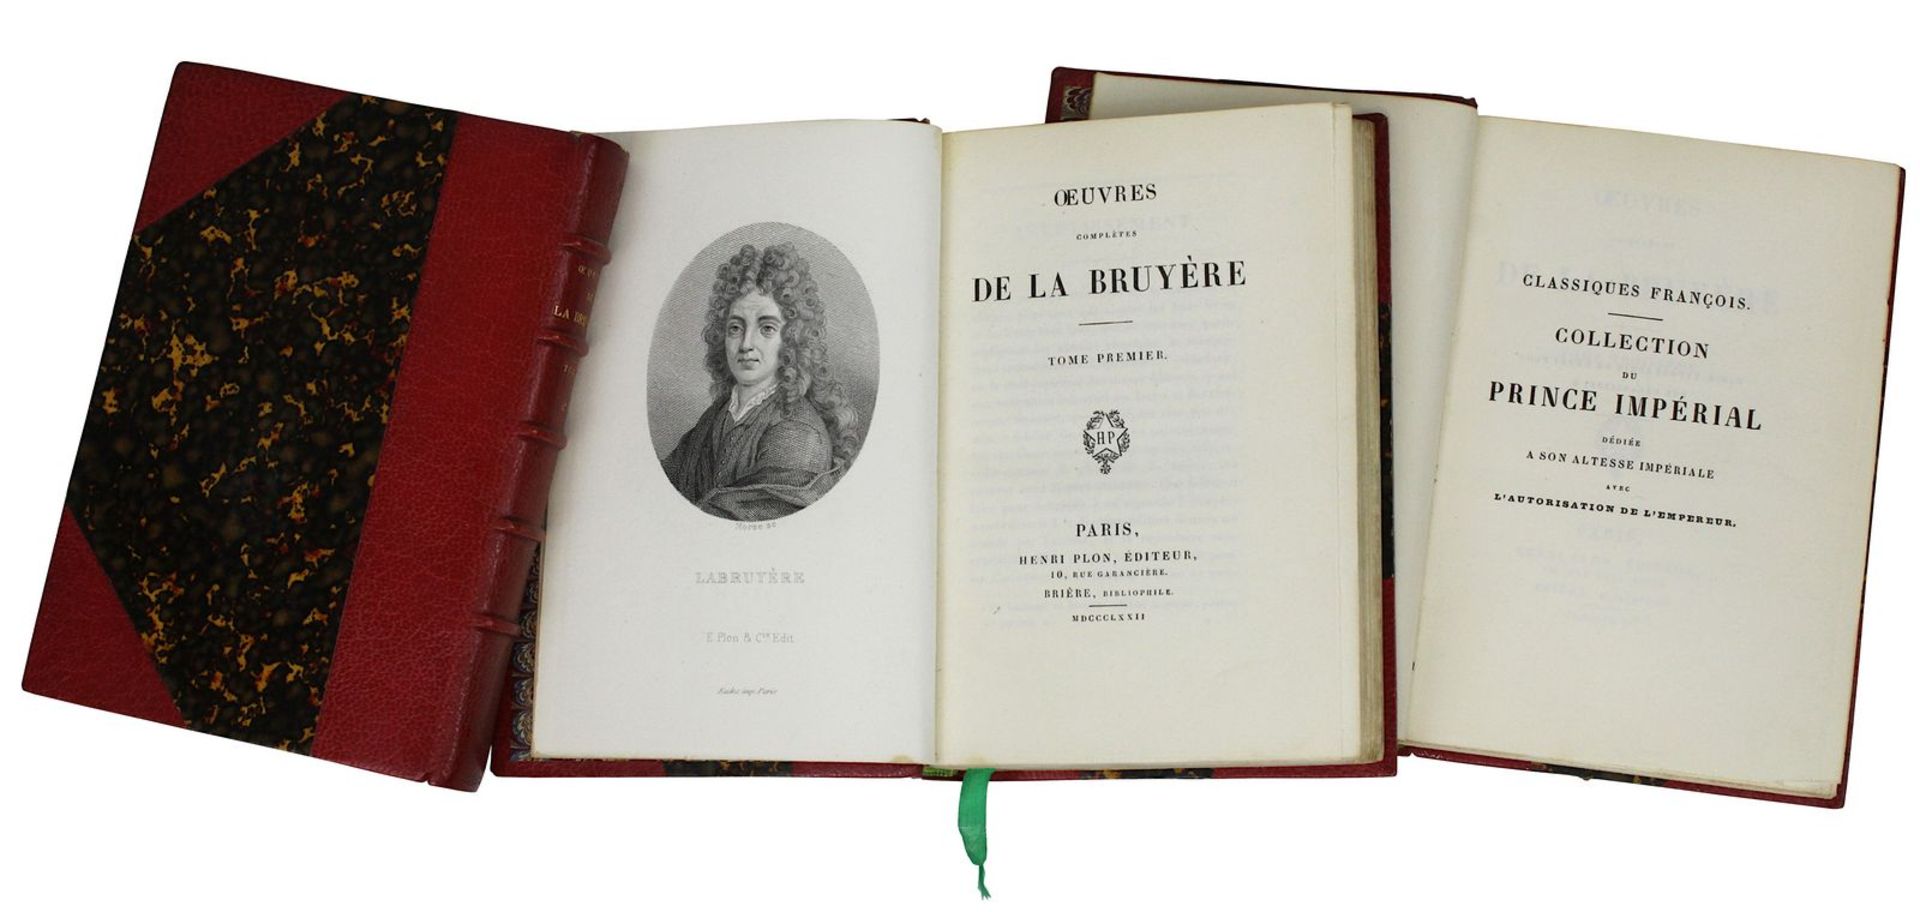 "Oeuvres de la Bruyère", Bd. 1 - 3, Henri Plon Paris 1872, Collection du Prince Imperial, Bd. 1